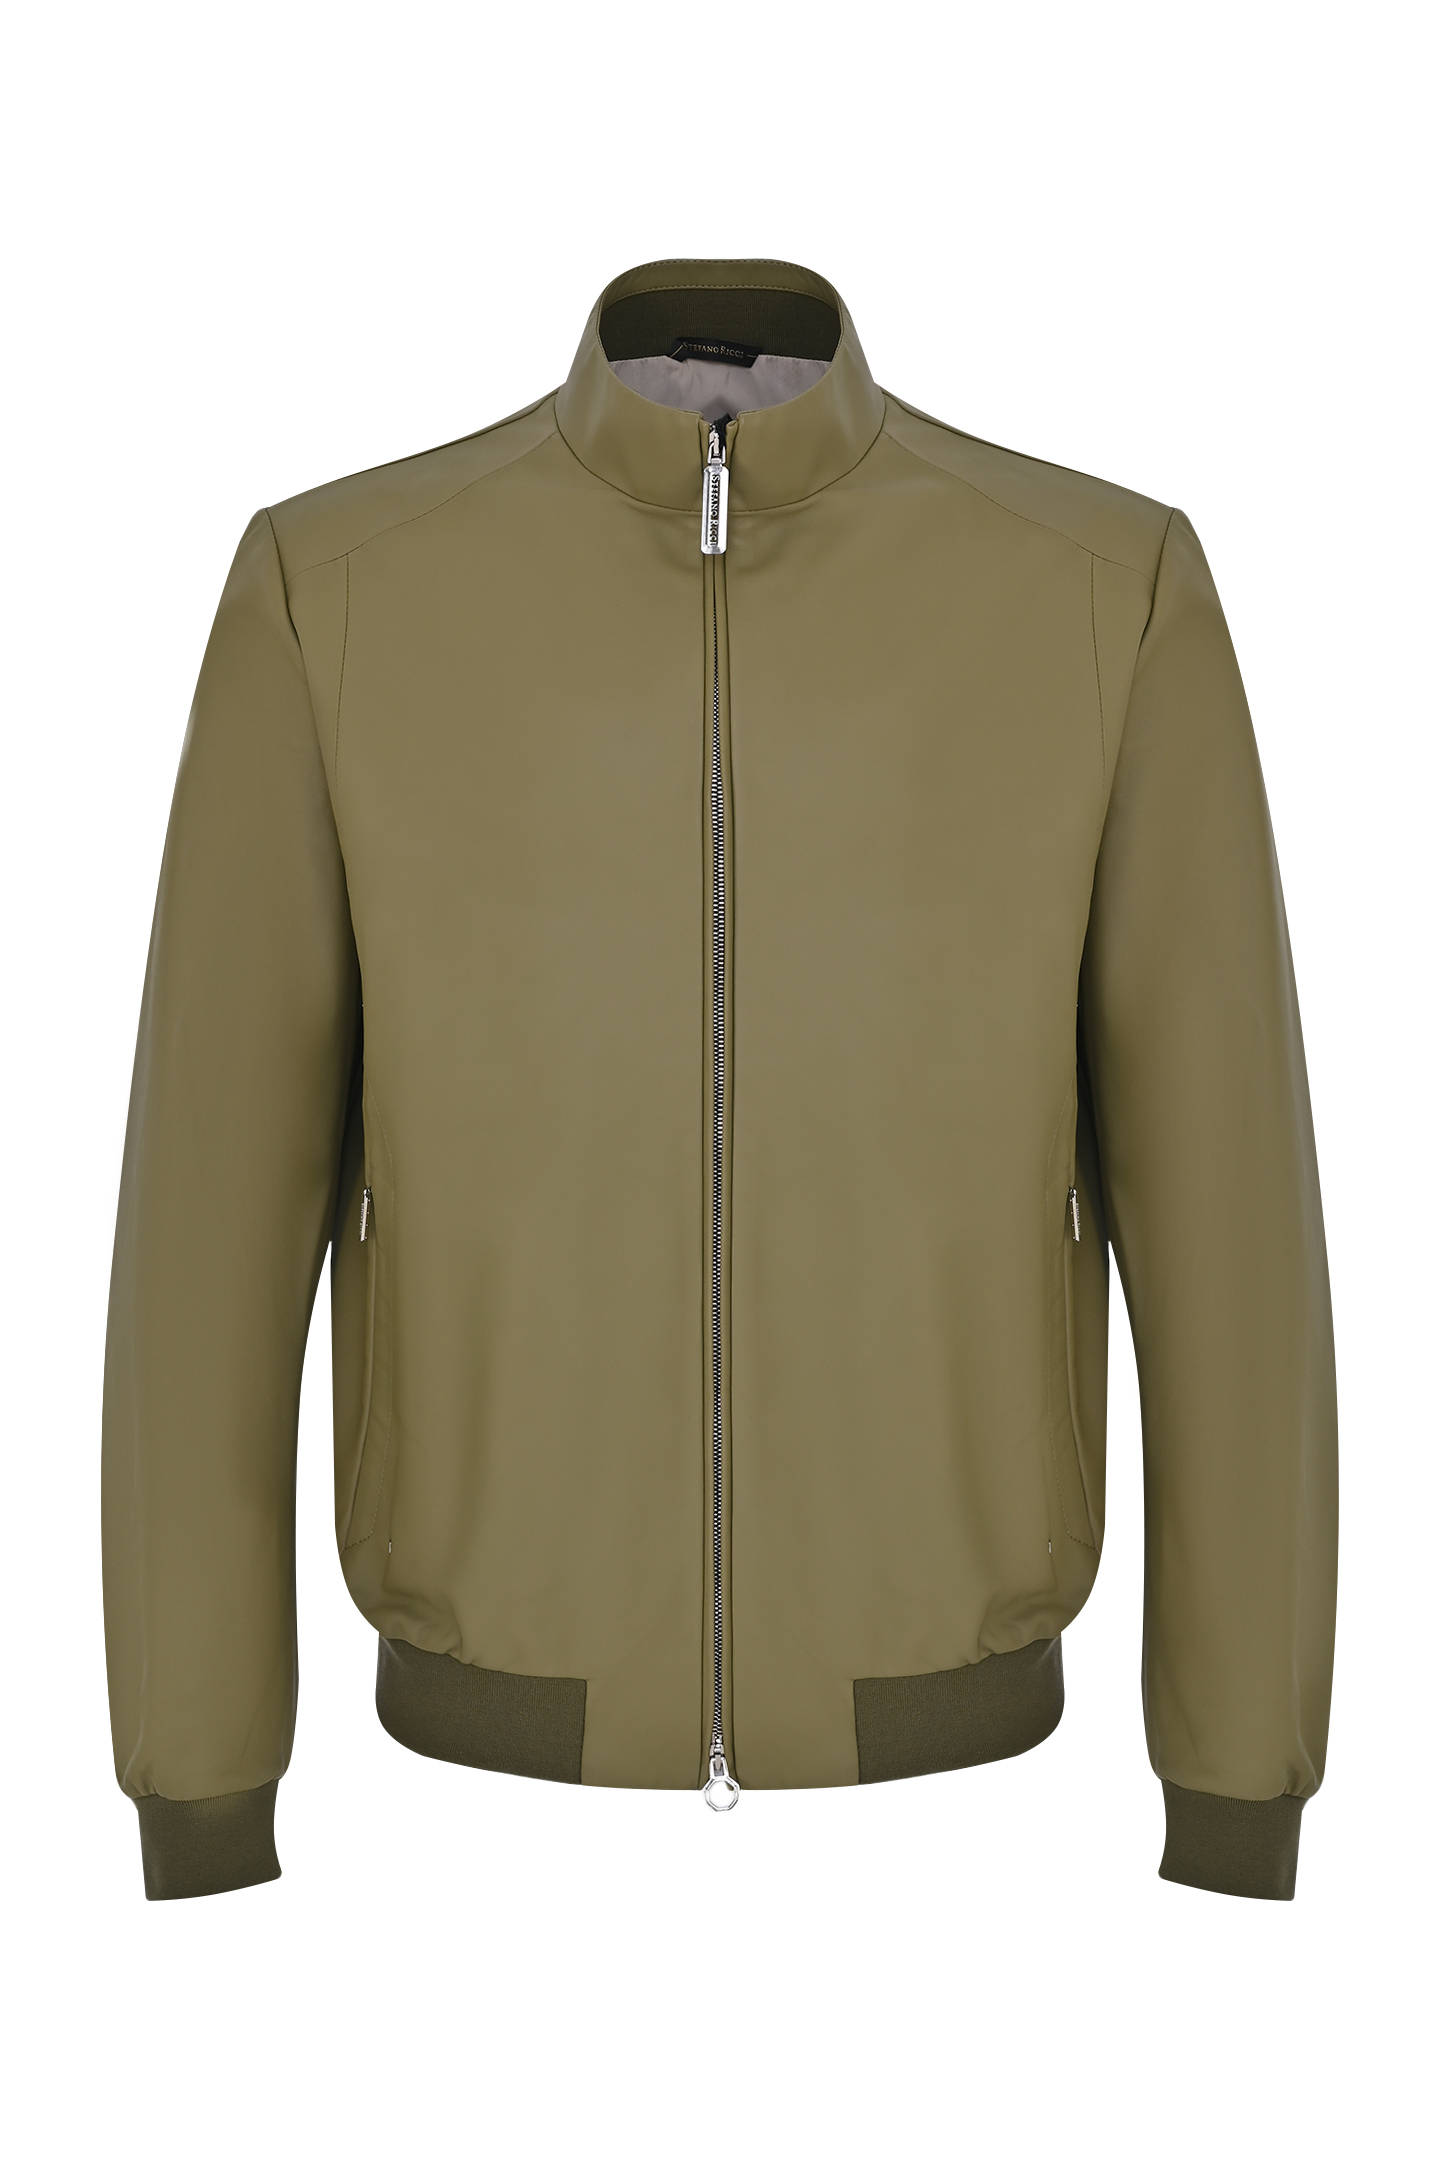 Кожаная куртка STEFANO RICCI M7J4100010 NPVEOP, цвет: Оливковый, Мужской